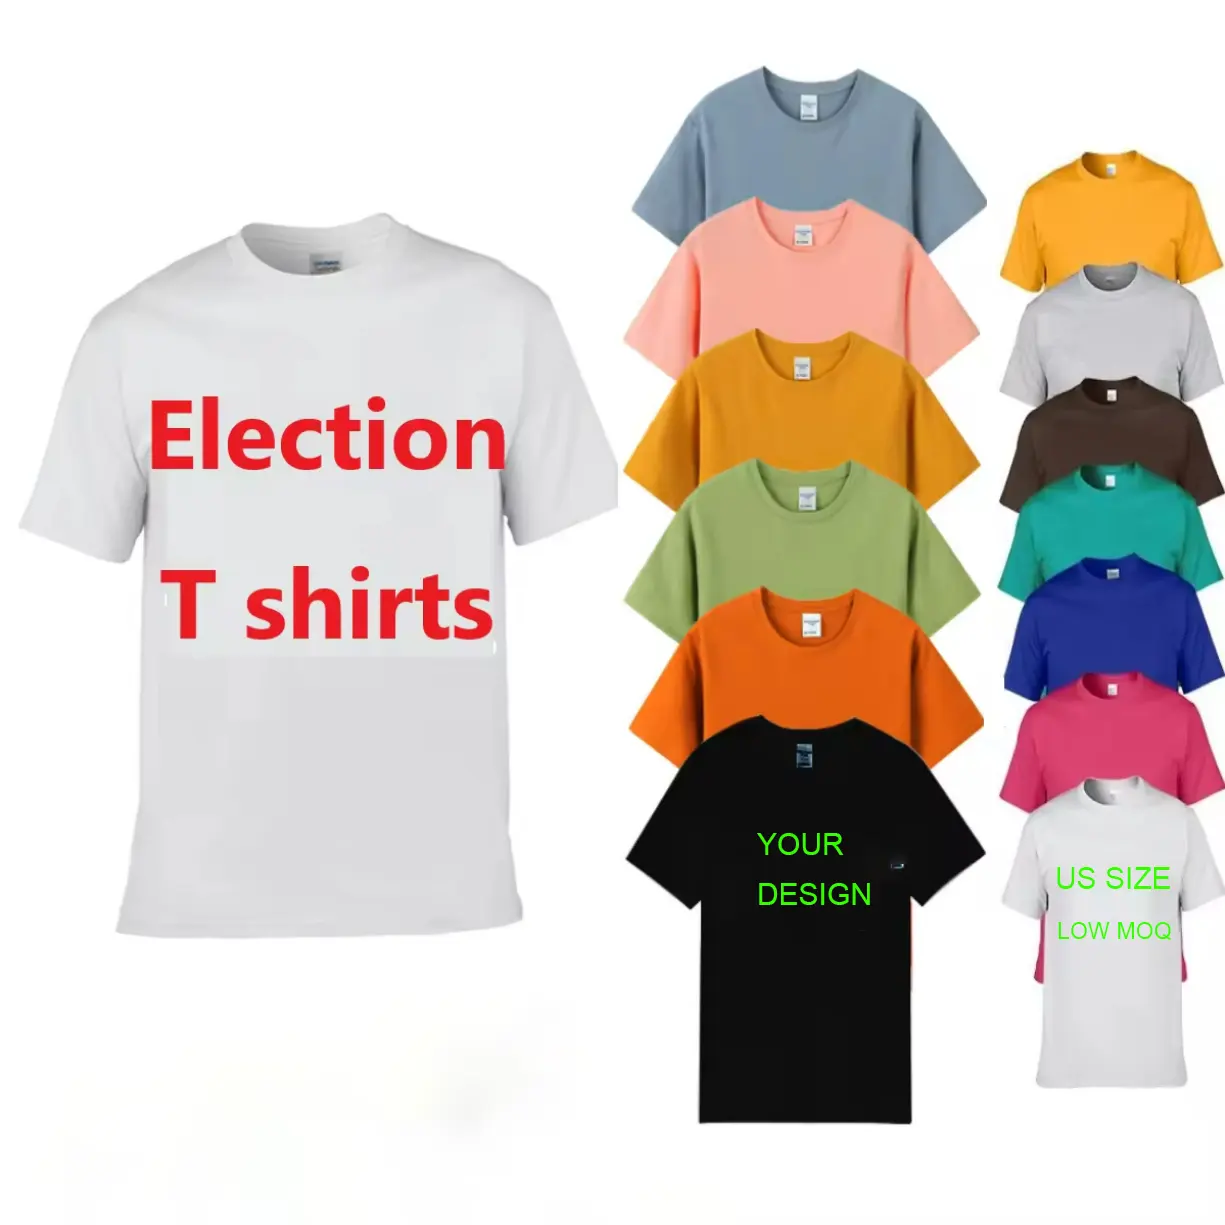 Venta al por mayor caliente de la campaña electoral personalizada de artículos promocionales Presidente camiseta de poliéster elección Camiseta para los hombres